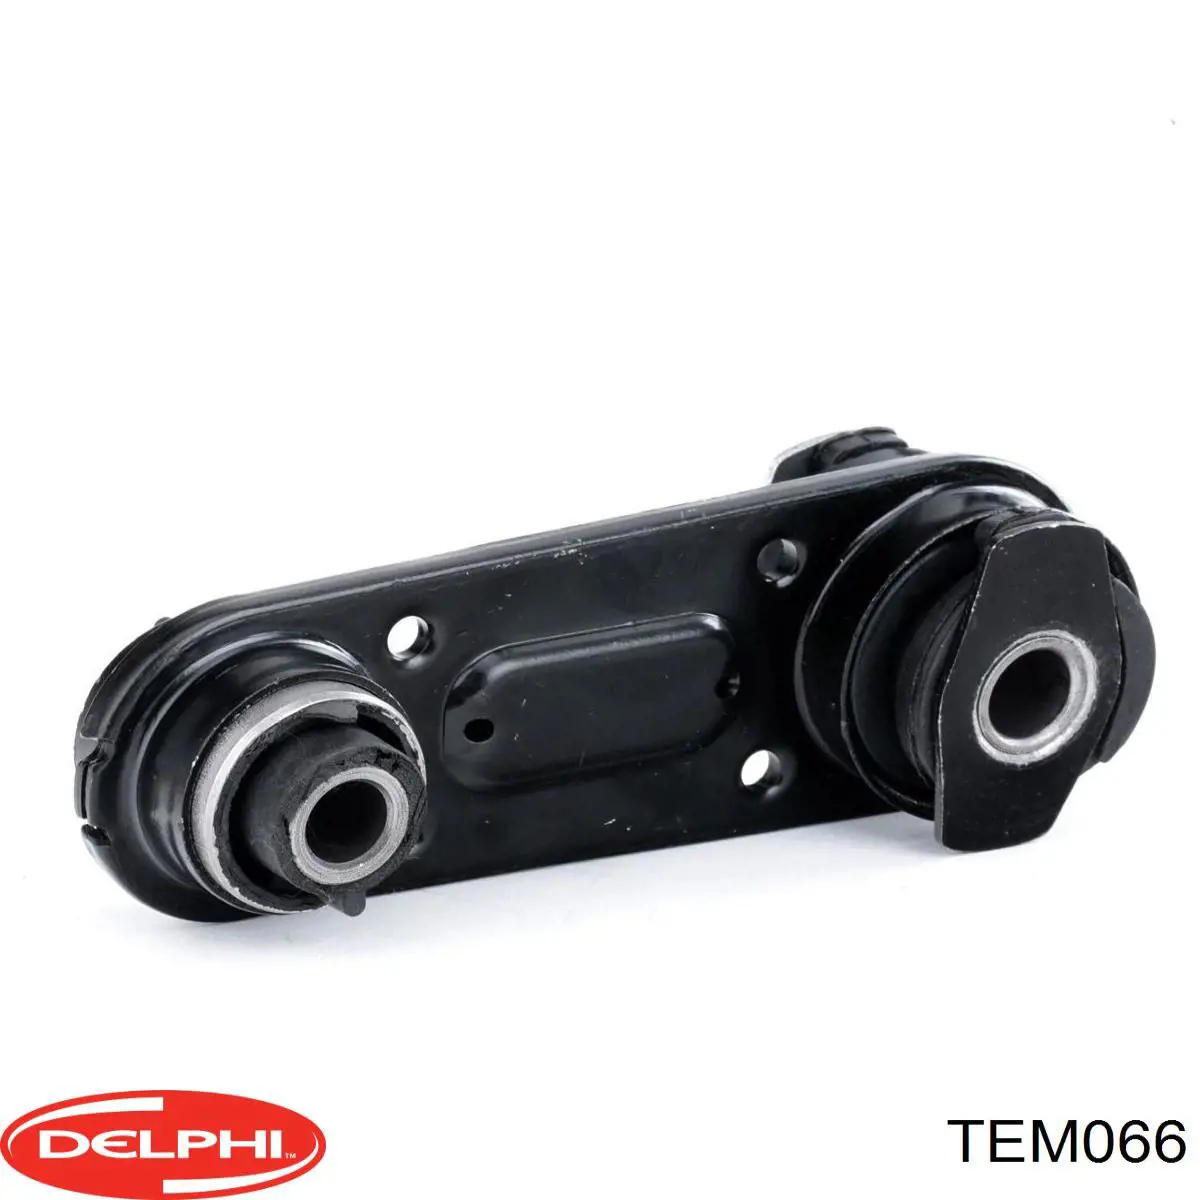 TEM066 Delphi soporte de motor derecho